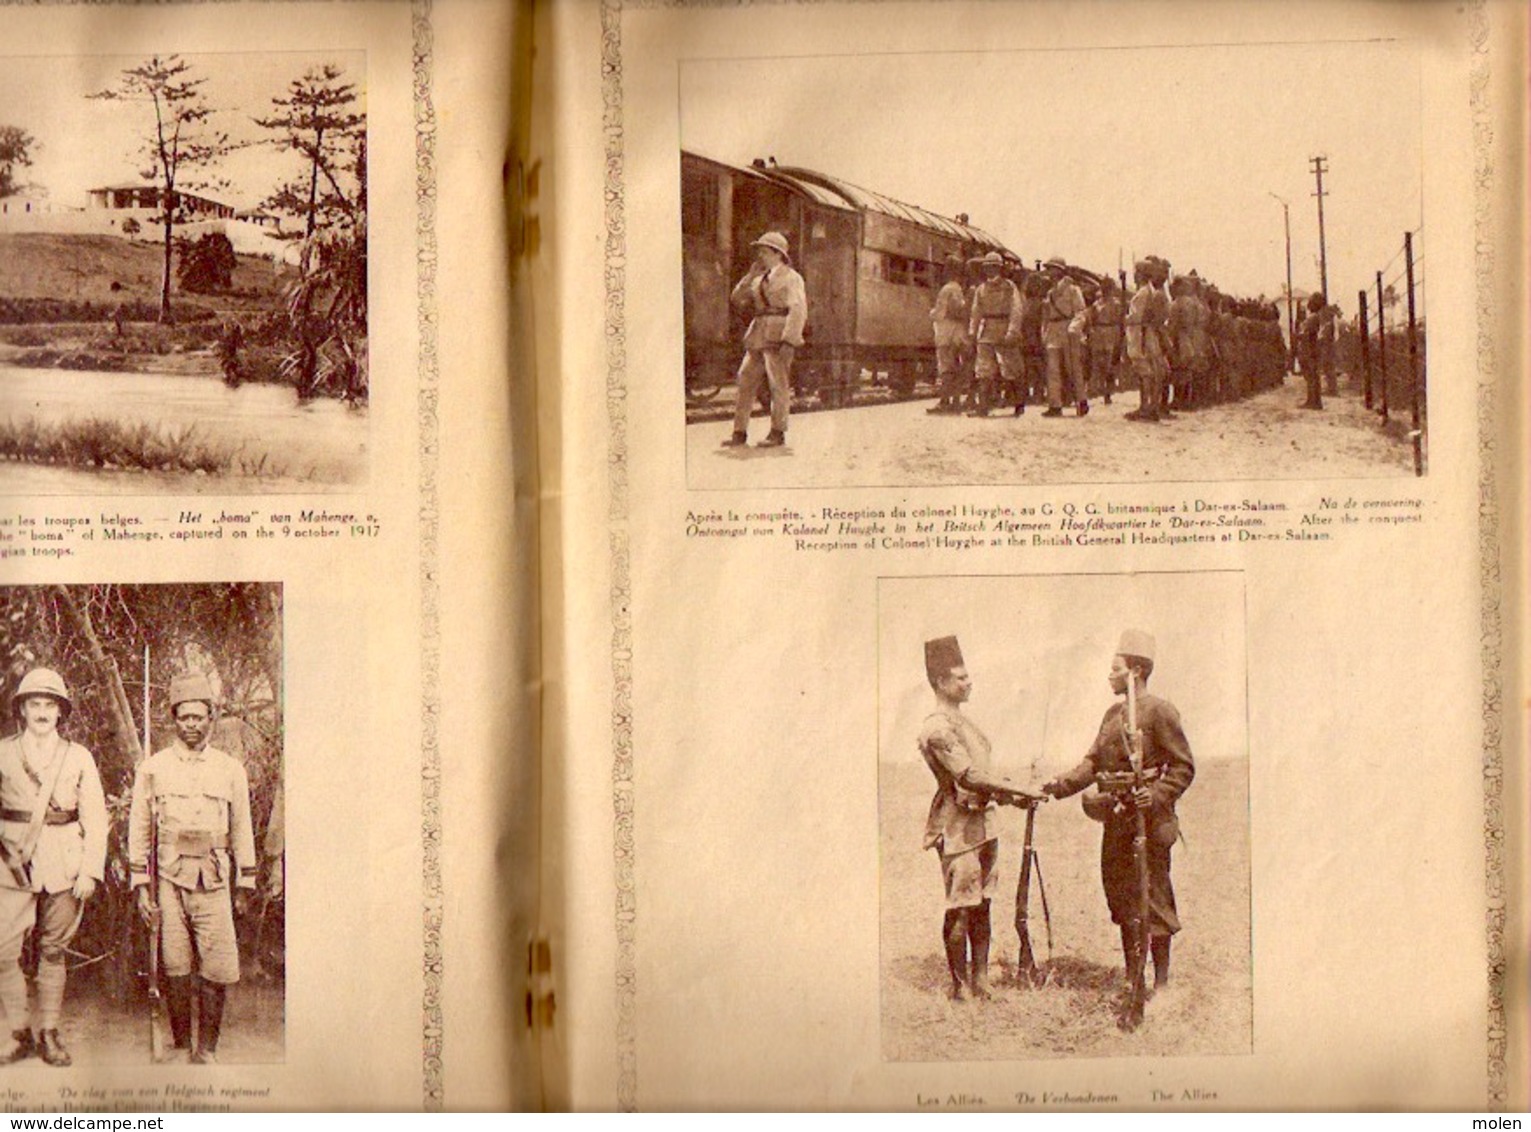 LES CAMPAGNES BELGES D AFRIQUE 1914-17 48pp ©1917 CAMEROUN EST AFRICAIN ALLEMAND Congo Belge colonie histoire Kongo Z170